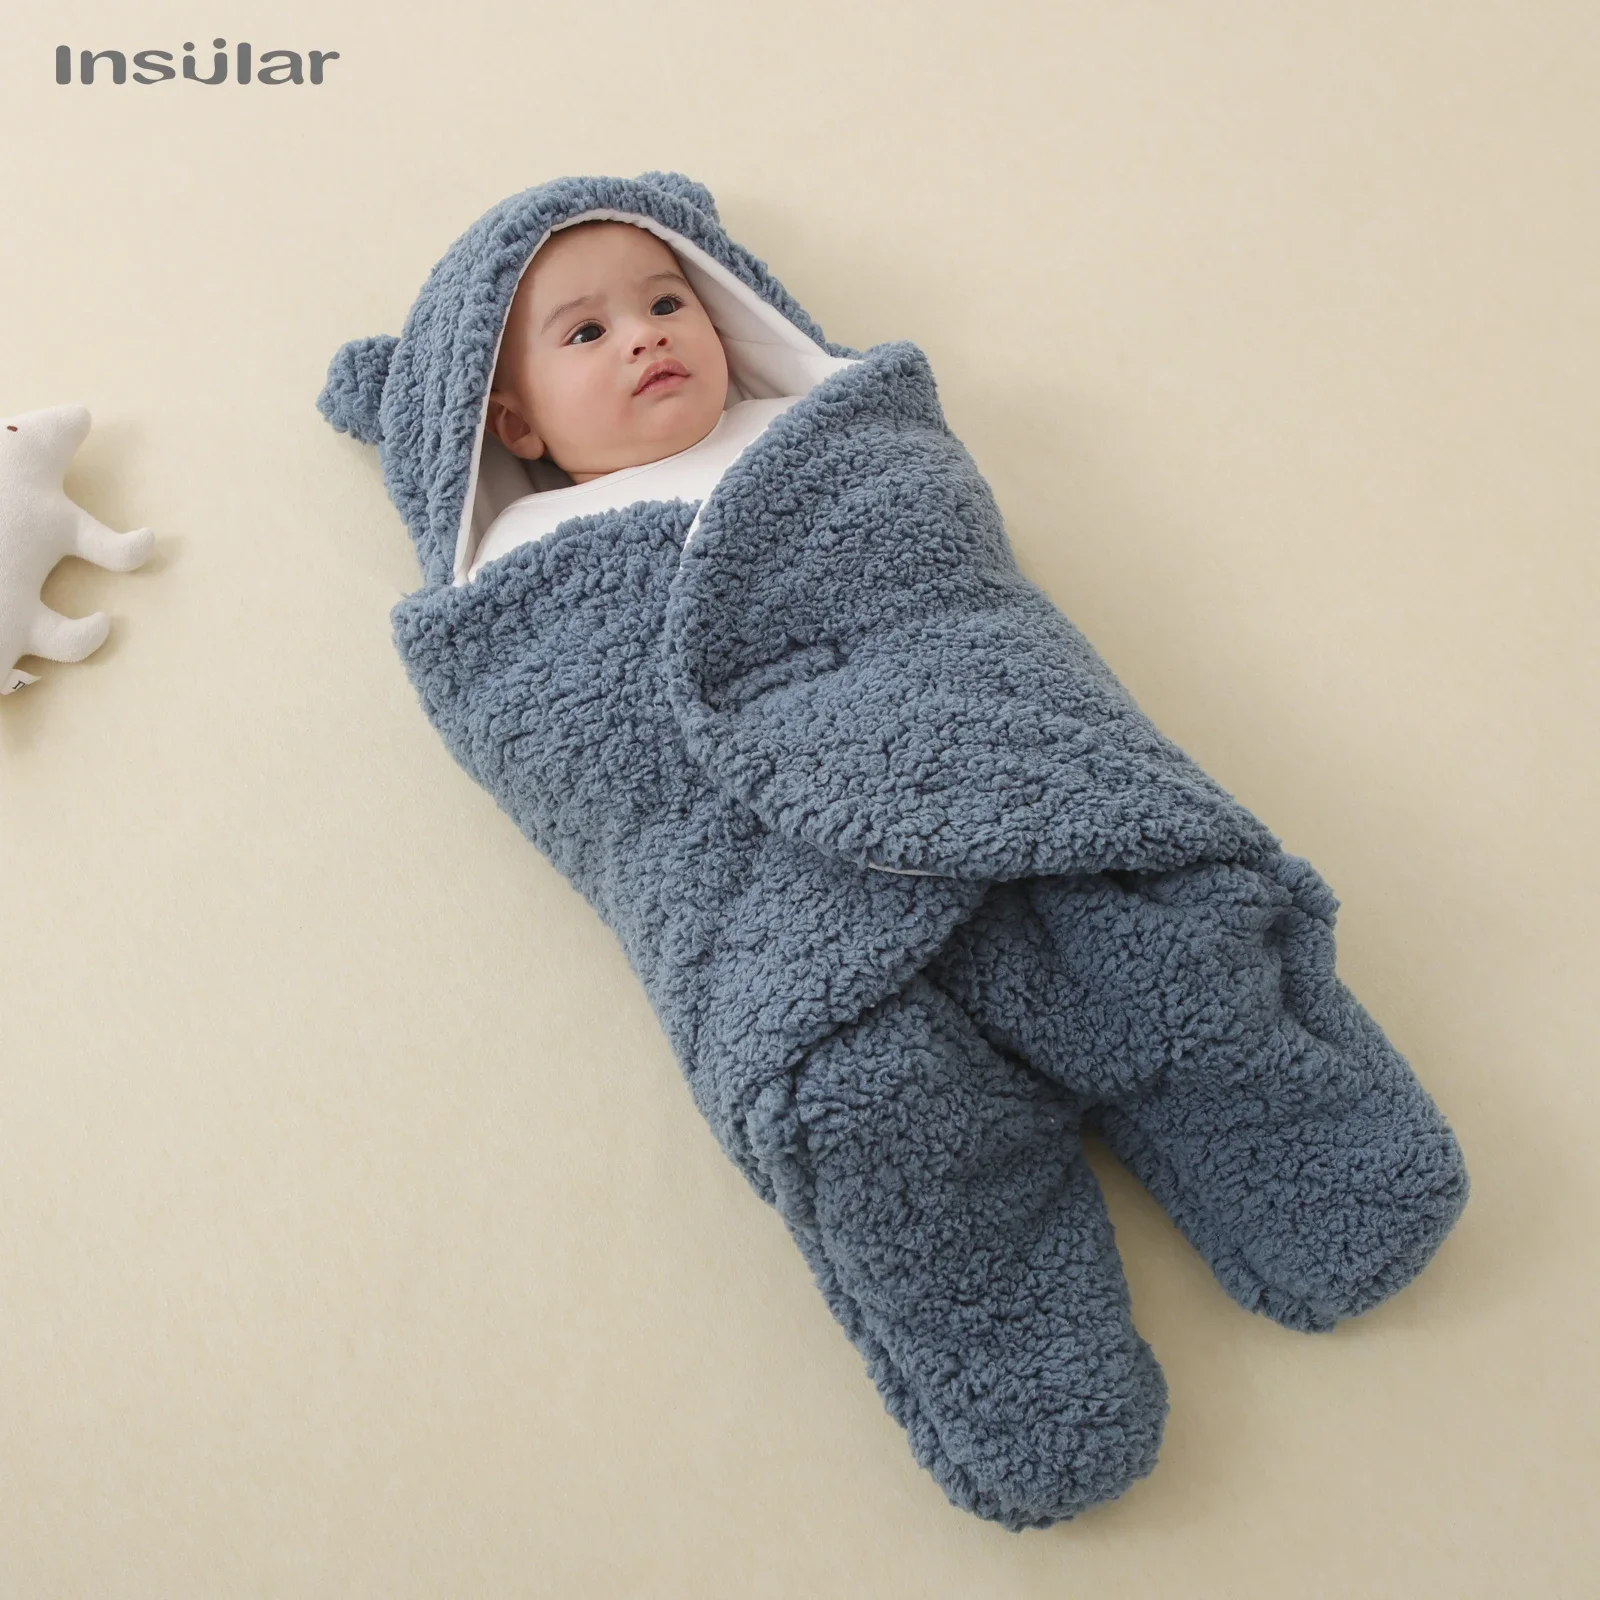 

Winter Warm Baby Sleeping Bag Envelope Soft Newborn Baby Wrap Blankets Newborn Sleepsack Cotton Thicken Cocoon for Baby 0-6Month